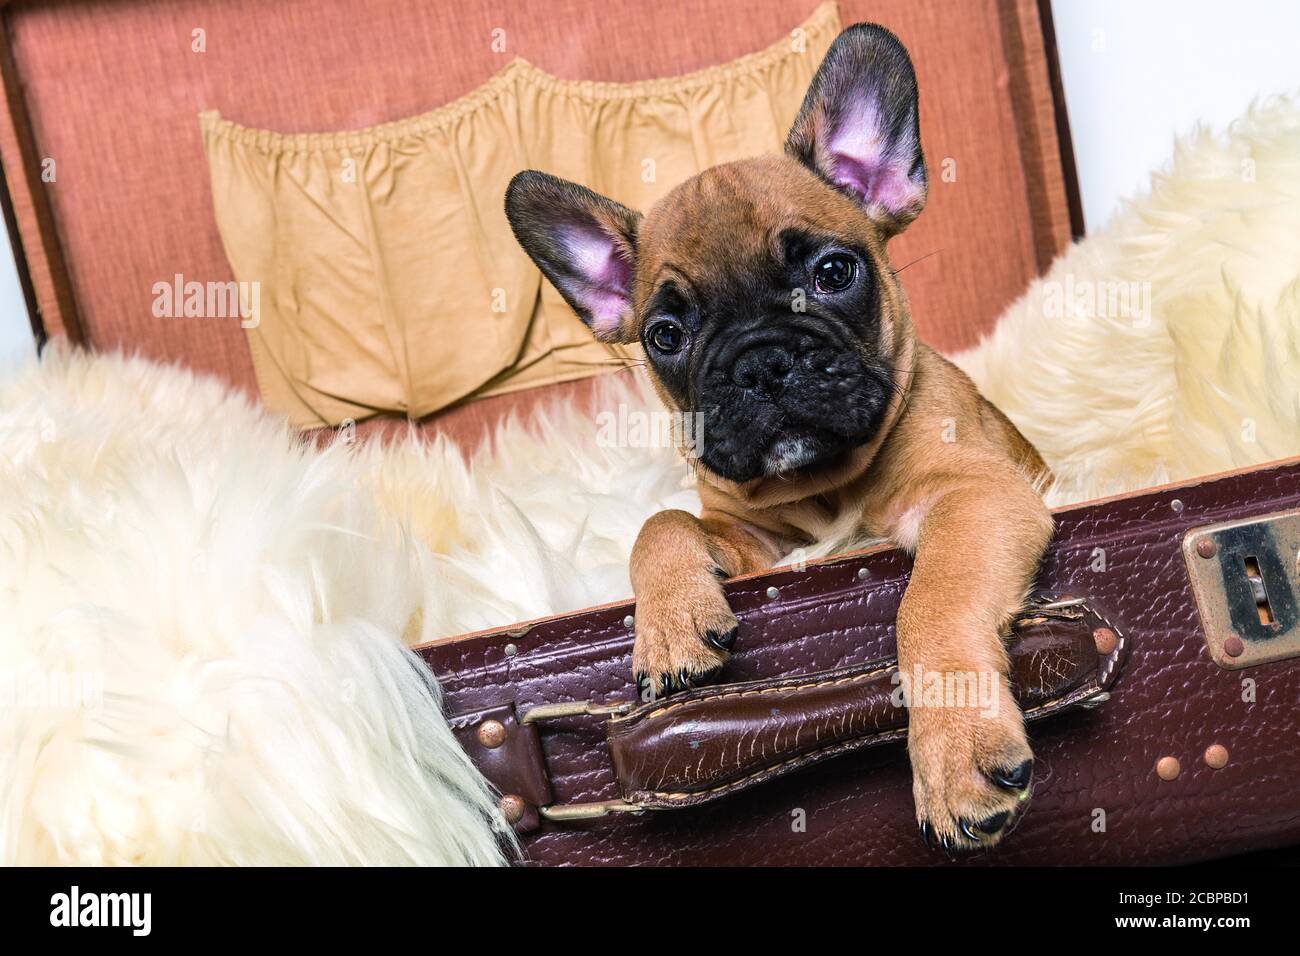 Bulldog français, teddy brun, brun clair avec visage noir, chiot, assis dans une vieille valise, portrait d'animal, Allemagne Banque D'Images